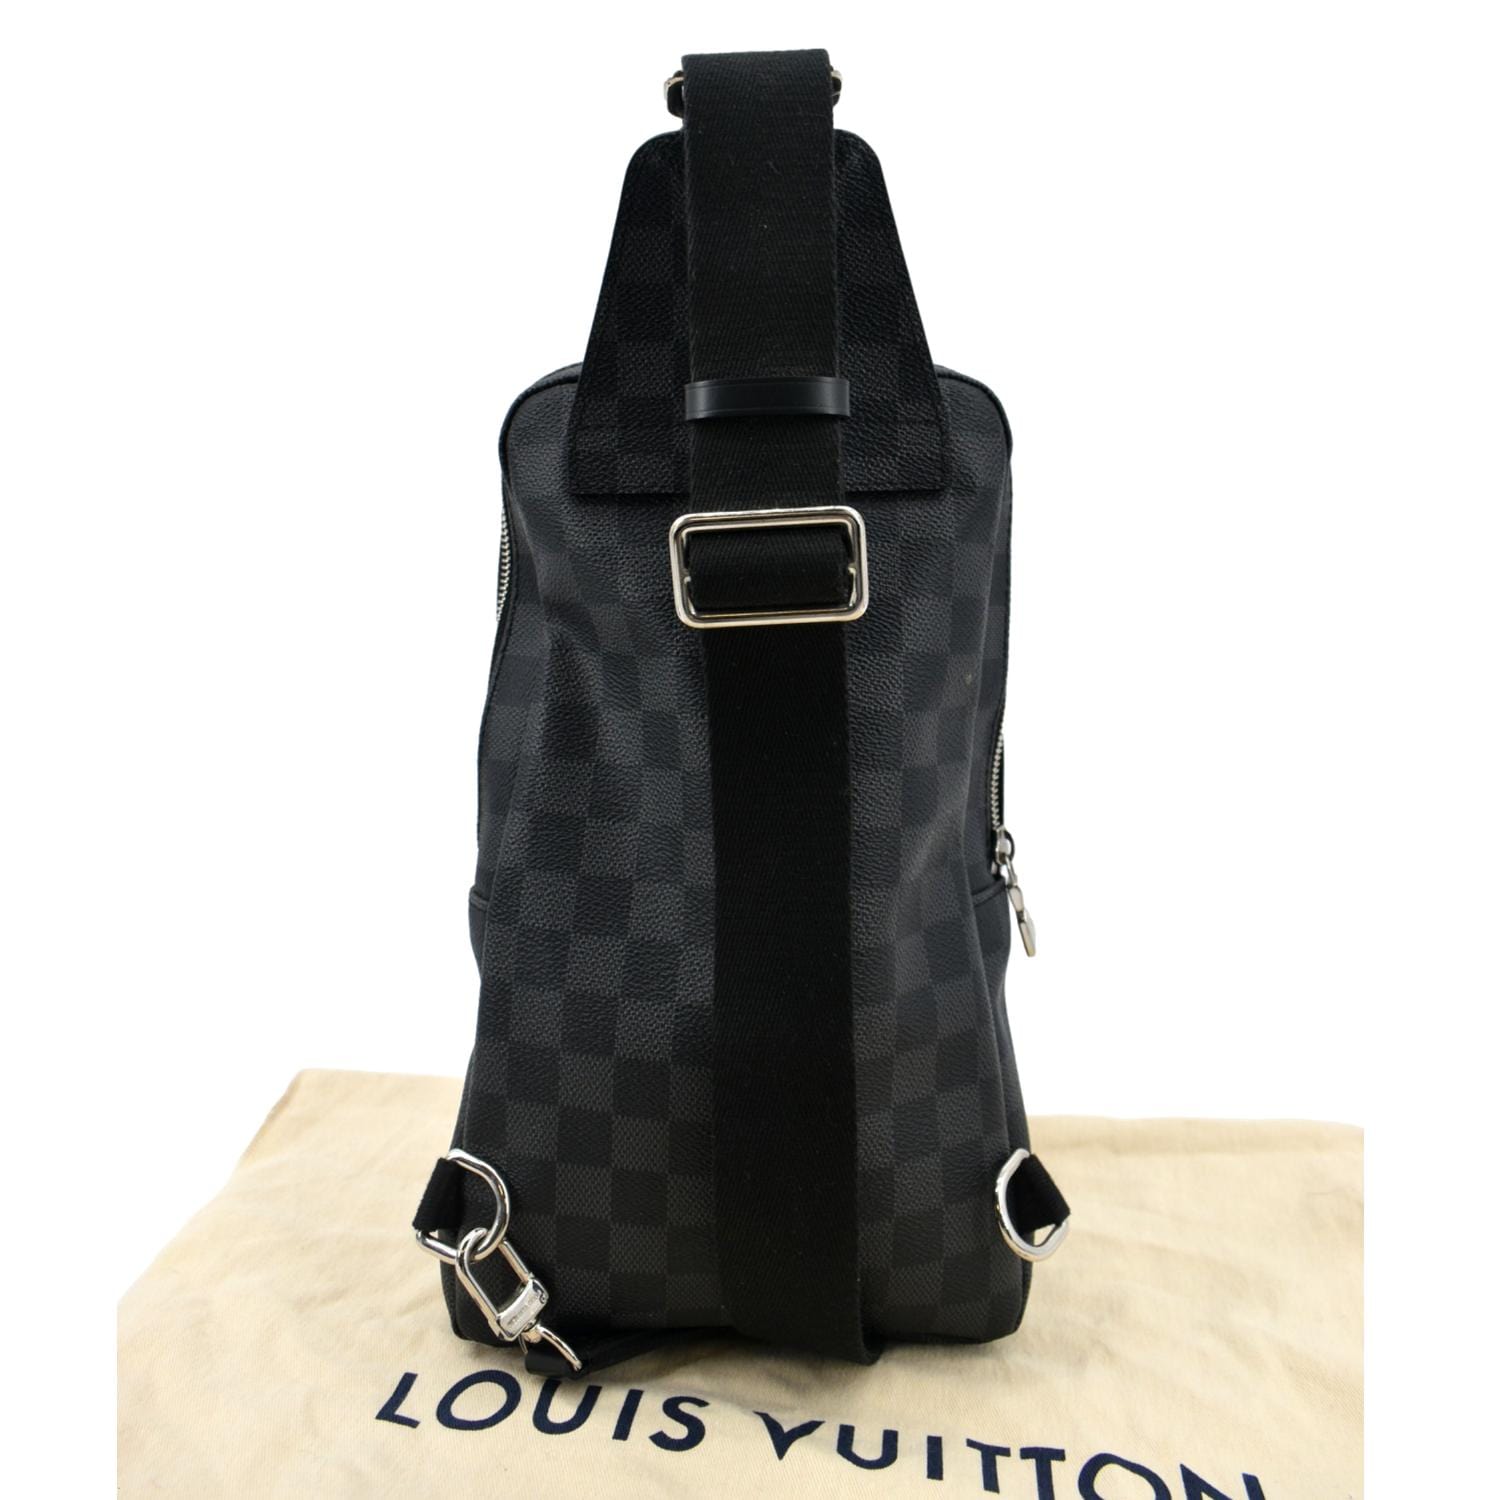 LV Louis Vuitton Unisex Bag